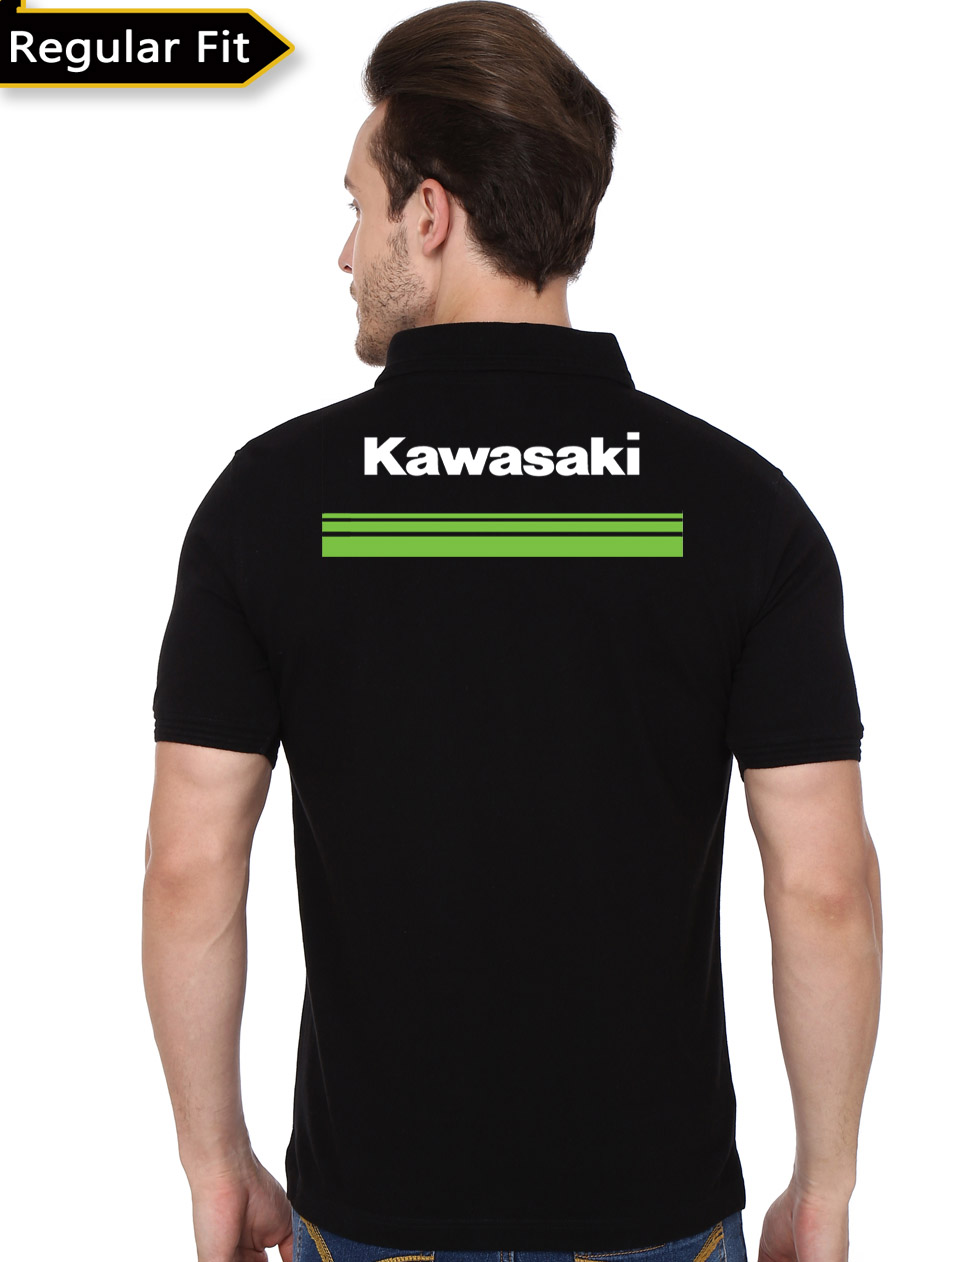 kawasaki t shirts india